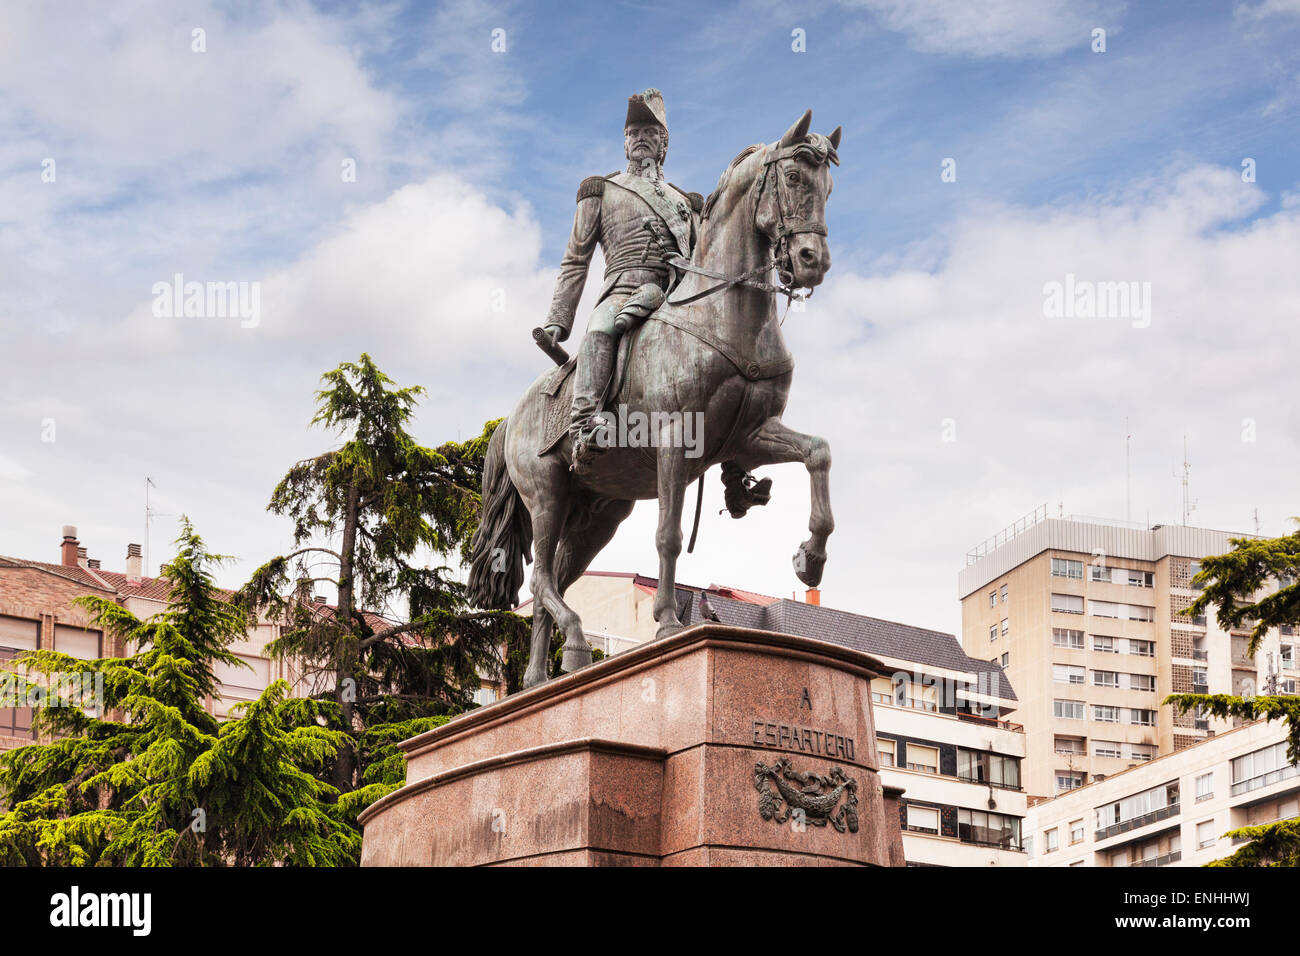 Statue of General Espartero, Logrono, La Rioja, Spain Stock Photo